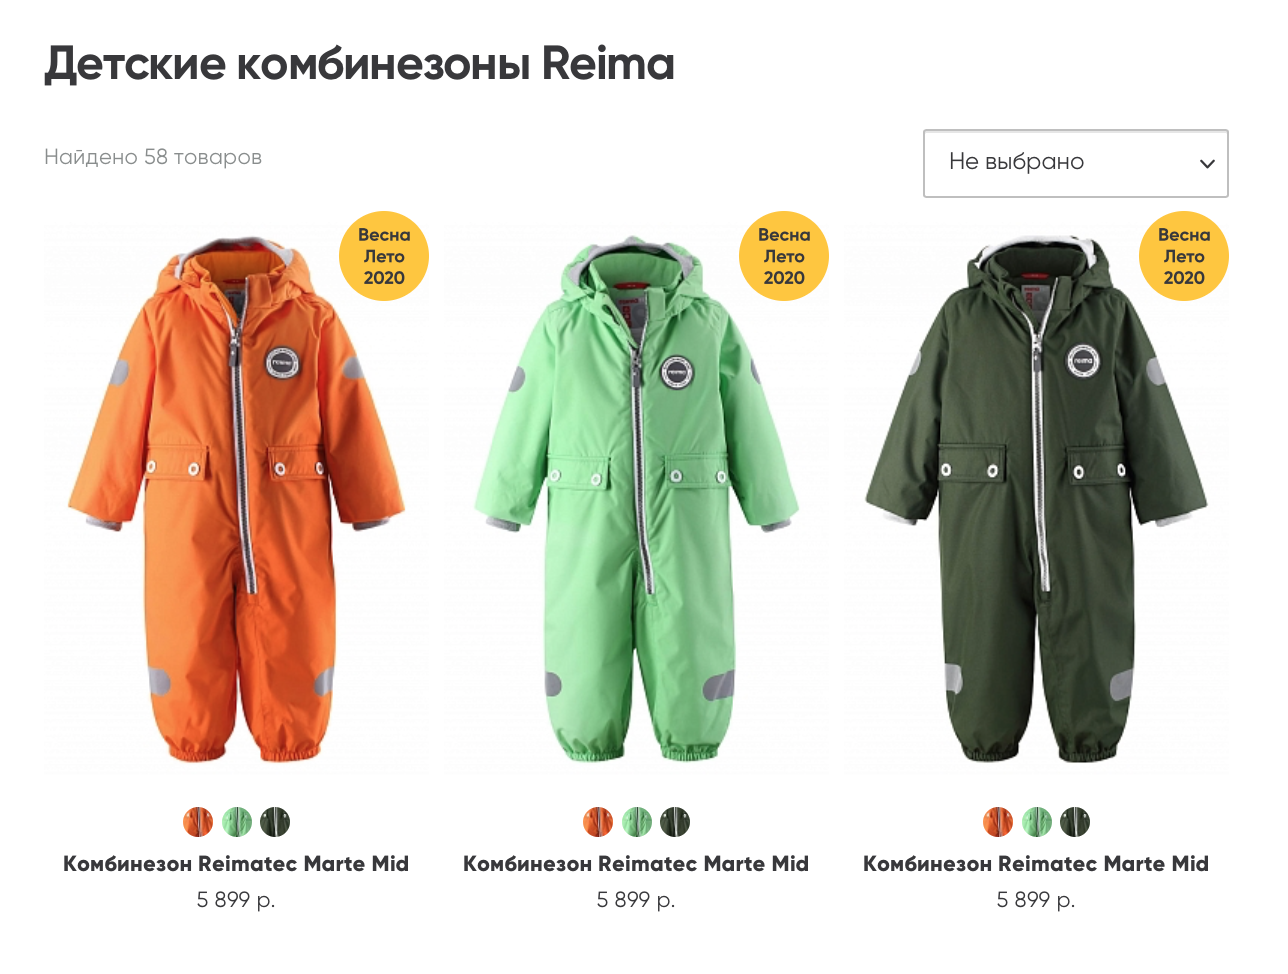 Весенне-летние комбинезоны «Рейма» продаются без скидки и стоят около 6 тысяч рублей. Источник: reimashop.ru